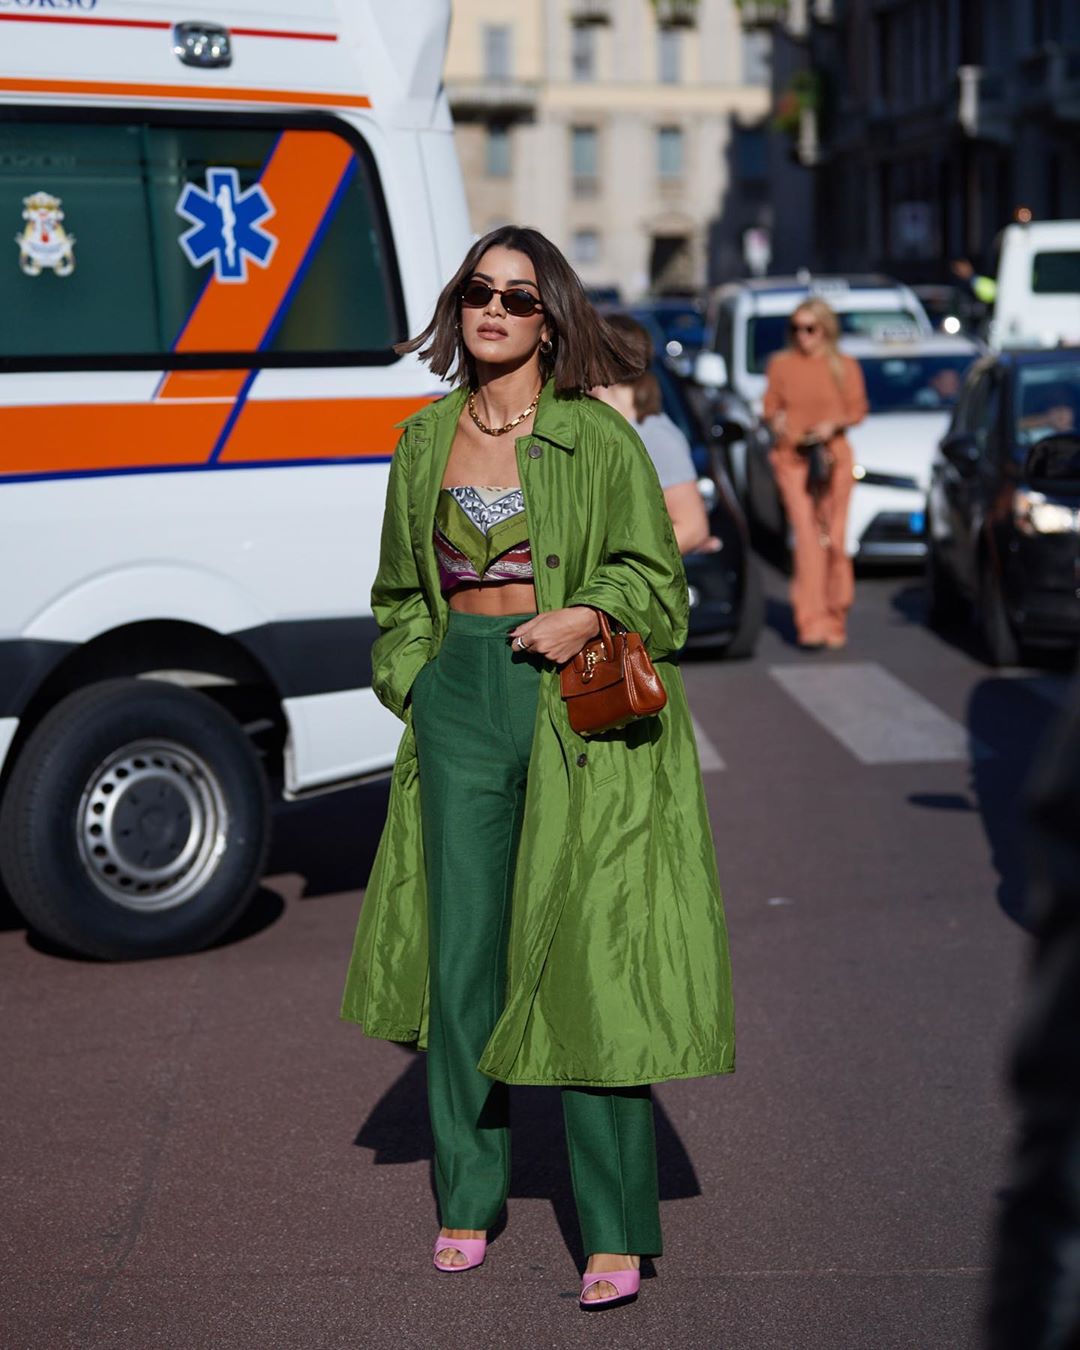 Dù diện trang phục nhiều màu sắc và họa tiết, Camila Coelho vẫn đảm bảo sự hài hoa cho tổng thể bằng cách chọn phụ kiện đồng điệu với họa tiết trên áo. (Ảnh: Getty Images) 